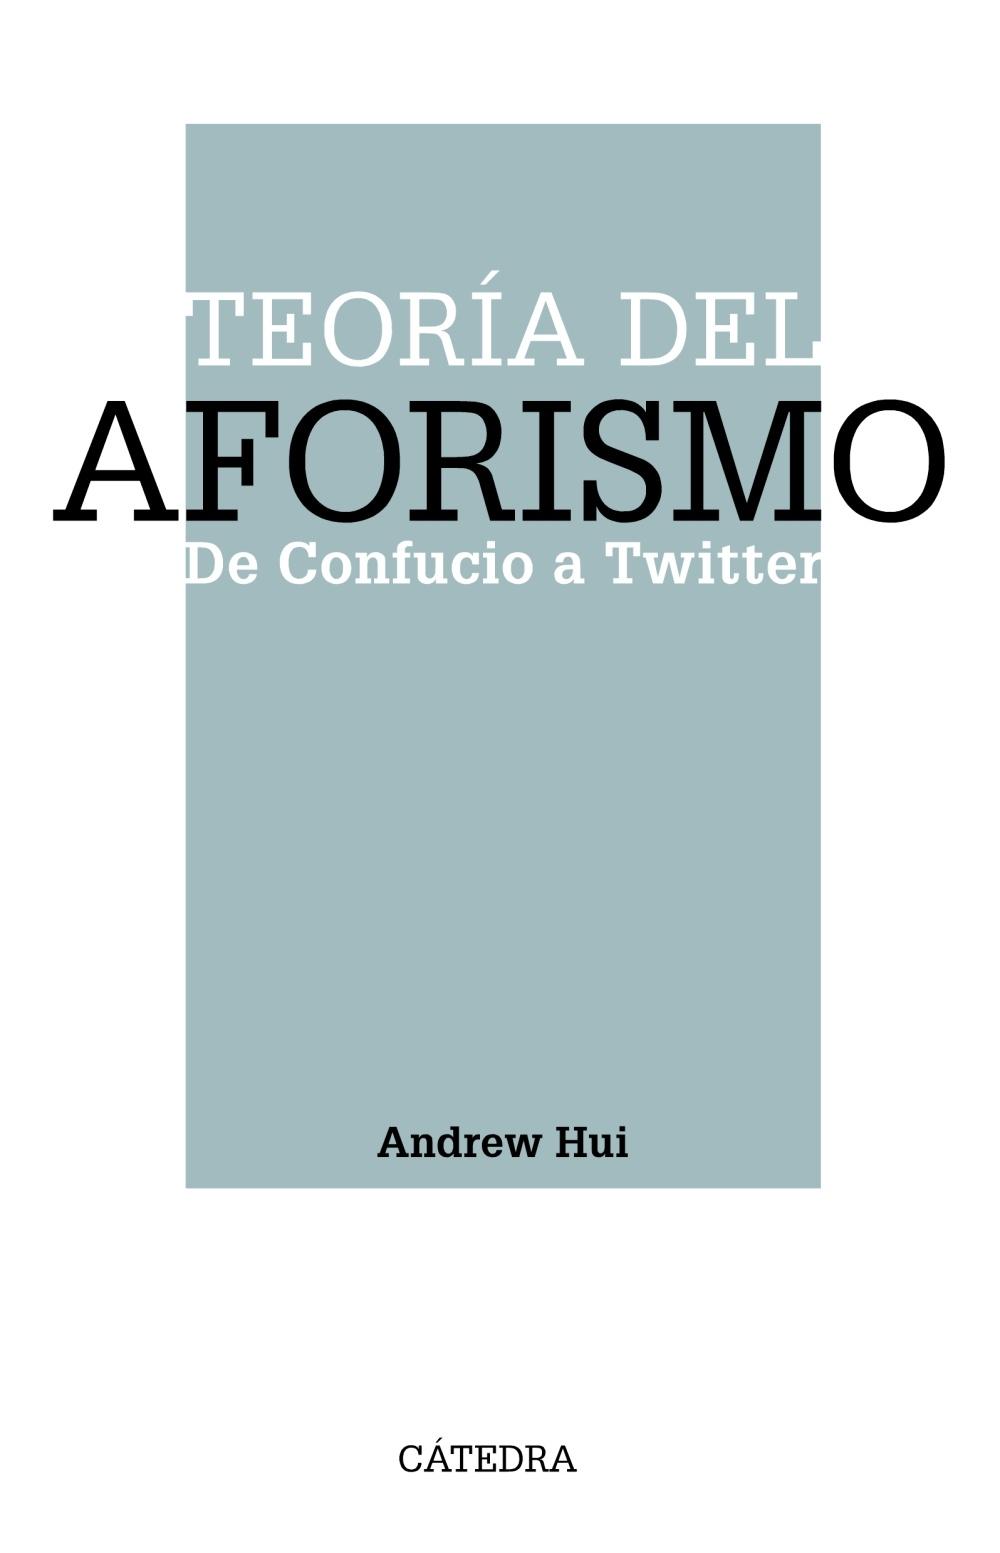 Teoría del Aforismo "De Confucio a Twitter". 